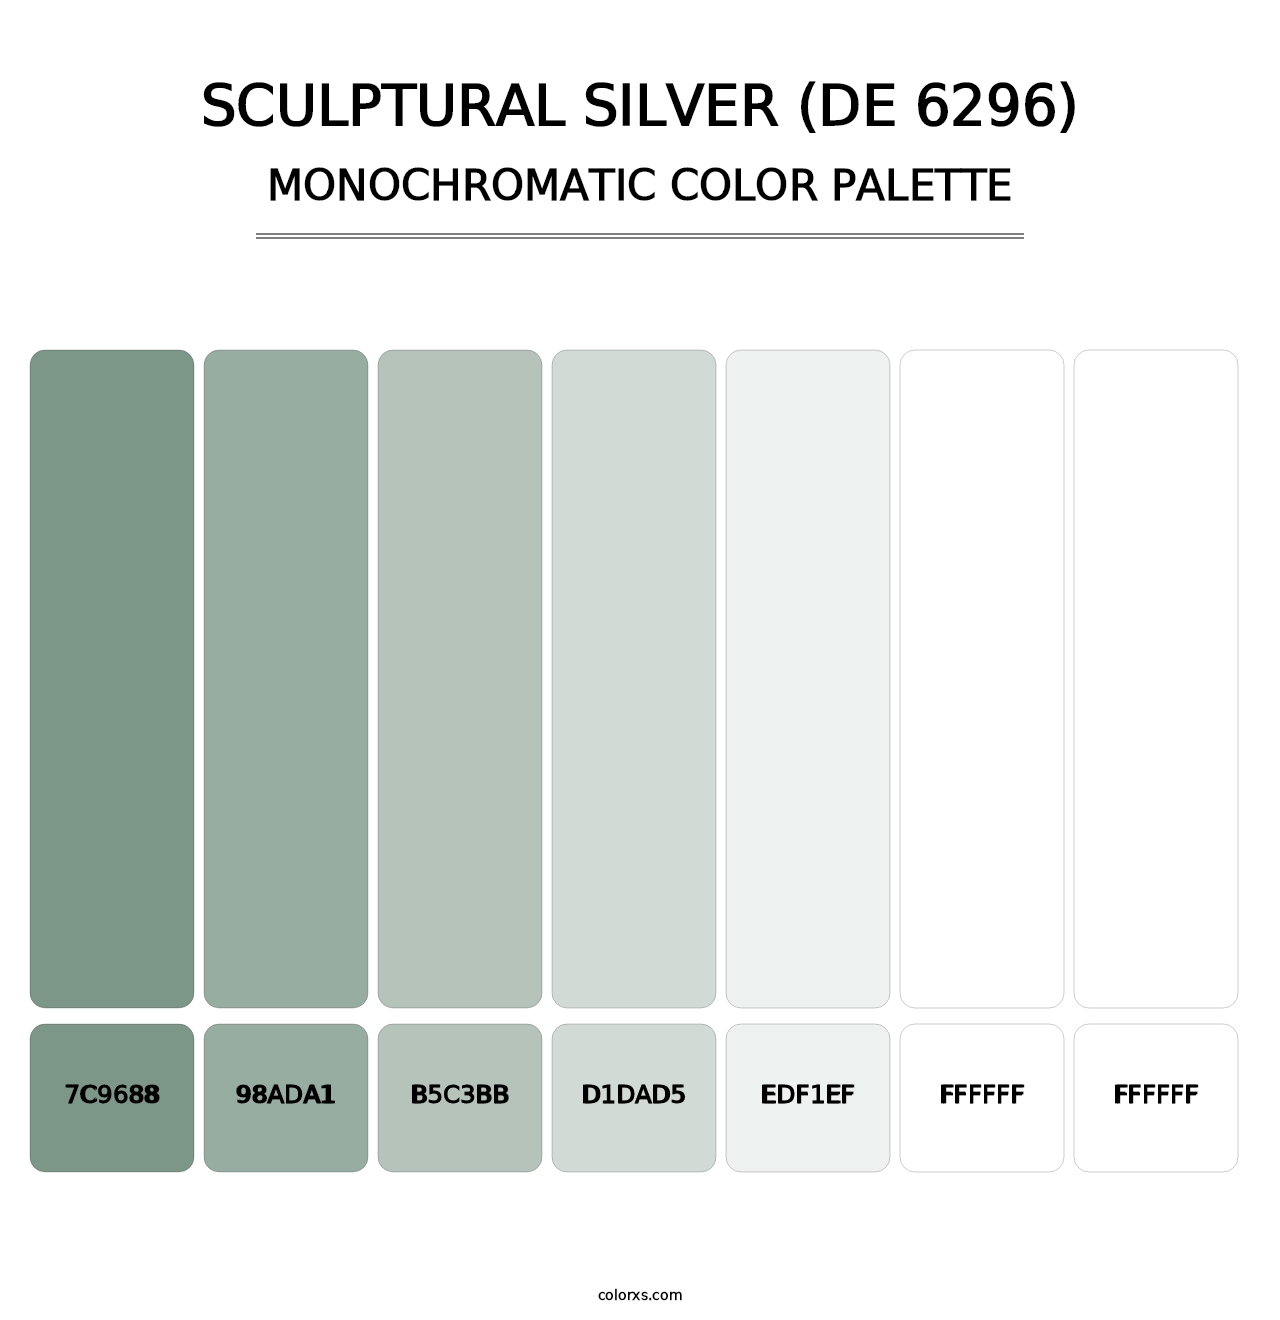 Sculptural Silver (DE 6296) - Monochromatic Color Palette